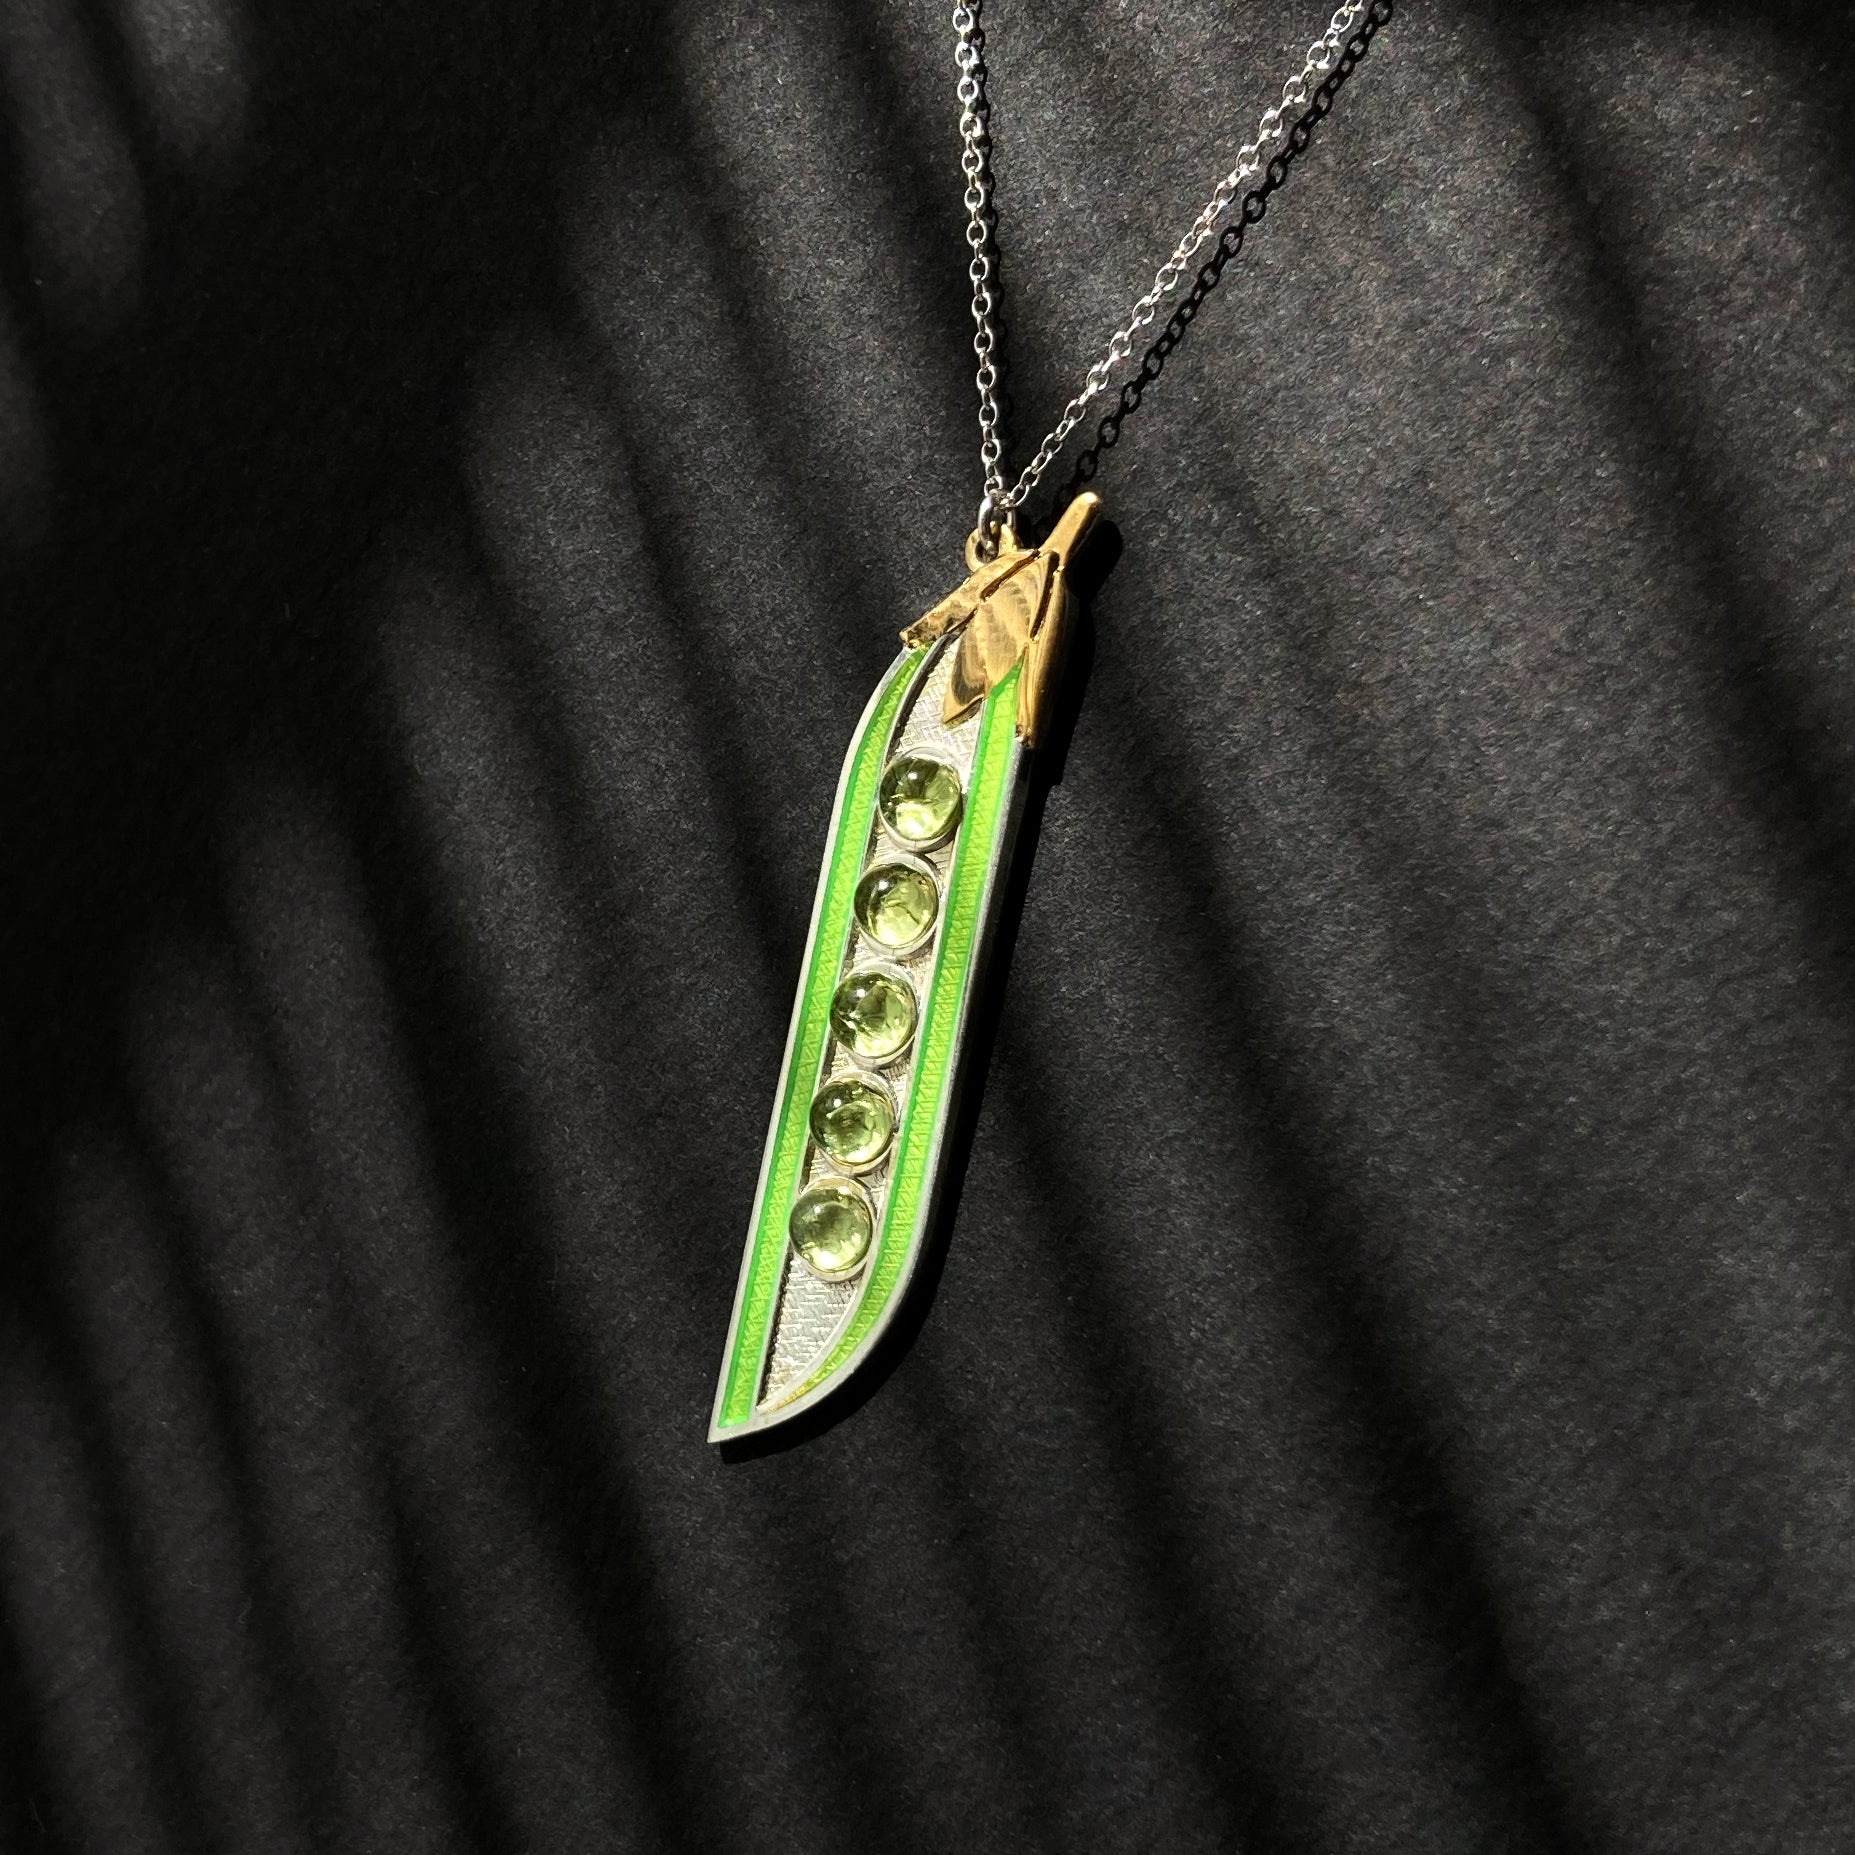 Two peas in a pod earrings. – Rising Jewelry by Kiona Elliott